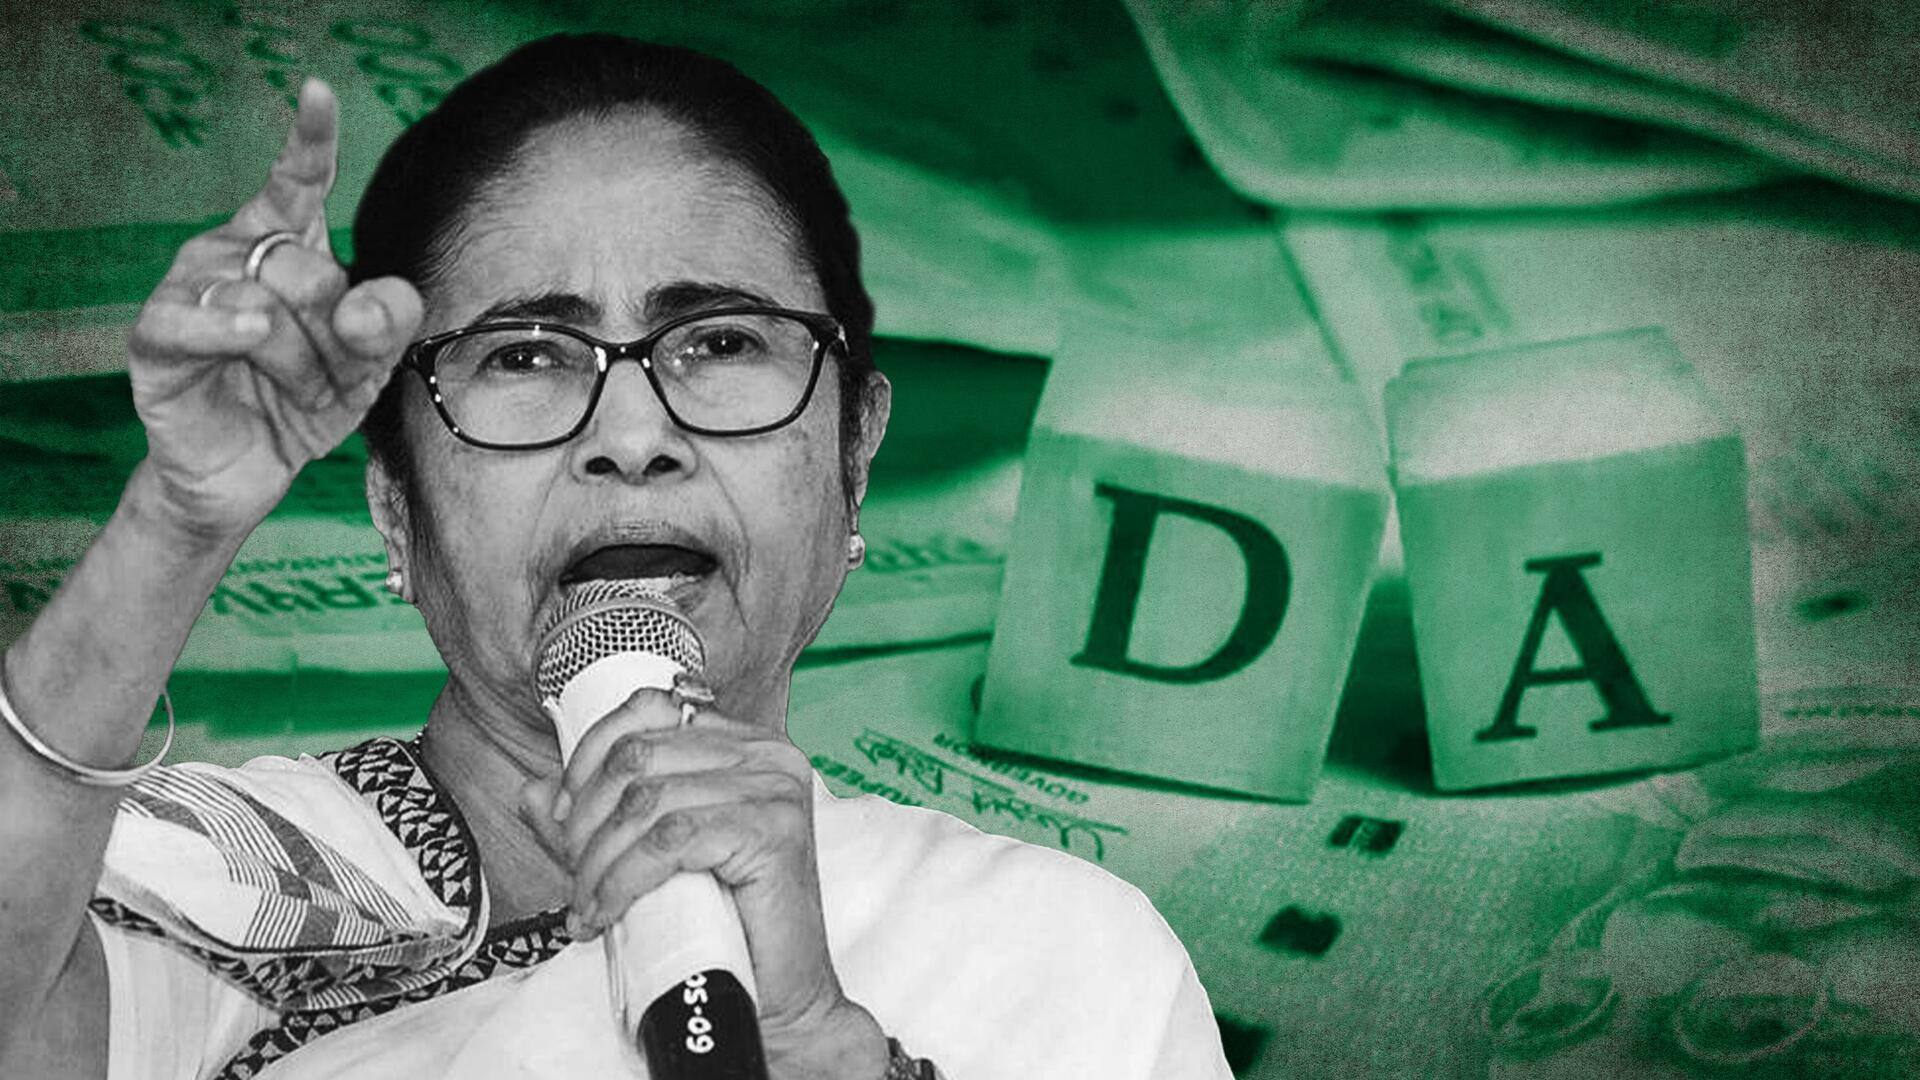 बंगाल: मुख्यमंत्री ममता बनर्जी ने किया महंगाई भत्ता बढ़ाने से इनकार, कहा- मेरा सिट काट लो...